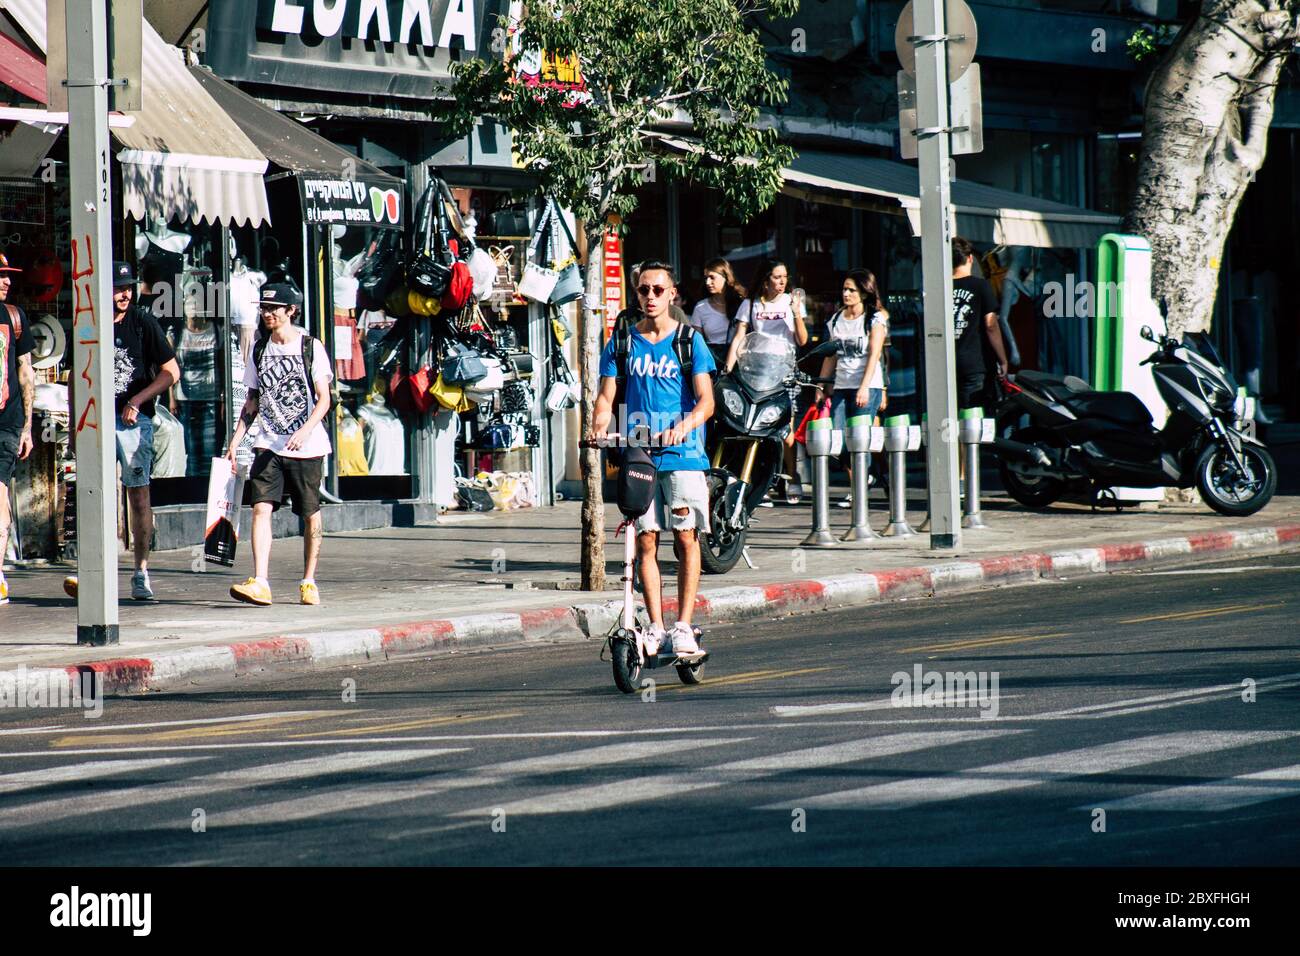 Tel Aviv Israele 9 agosto 2019 Vista di persone israeliane sconosciute che rotolano con uno scooter elettrico nelle strade di Tel Aviv nel pomeriggio Foto Stock